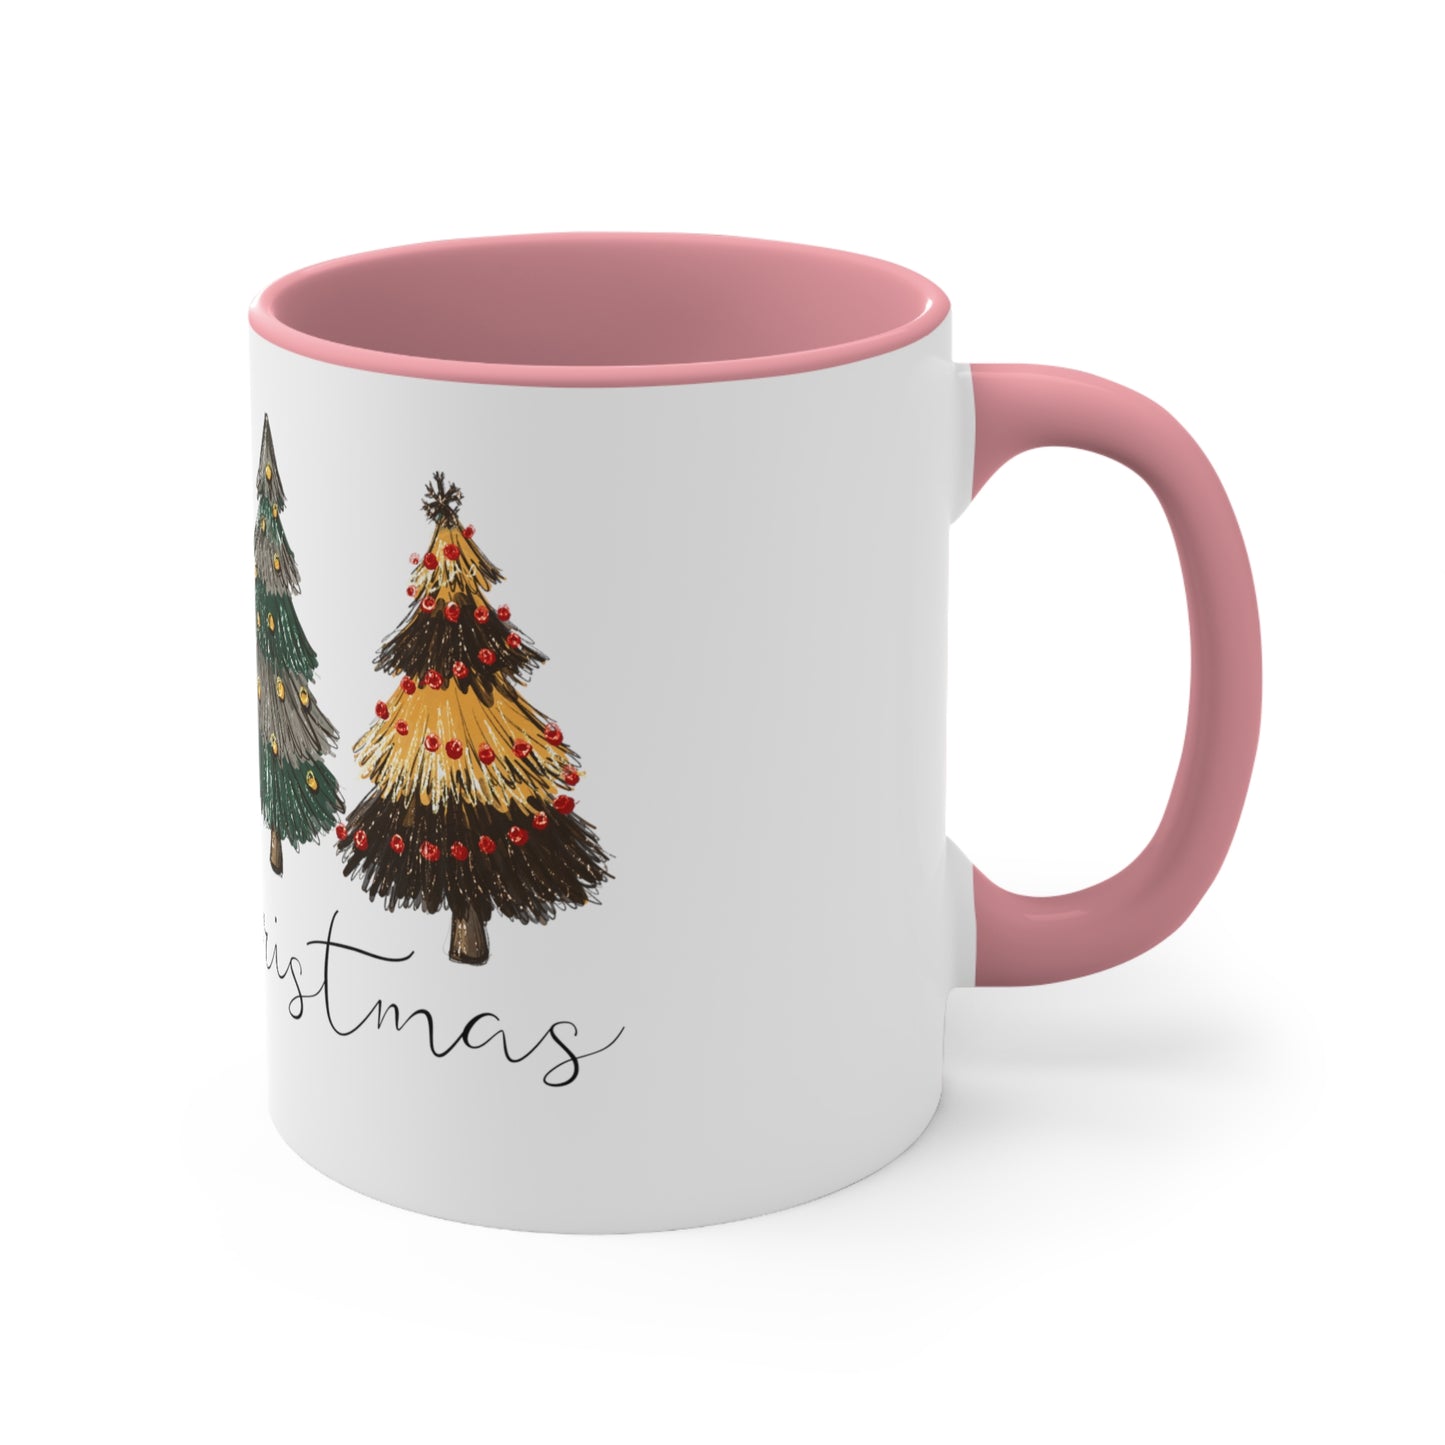 Christmas Trees House Coffee Mug